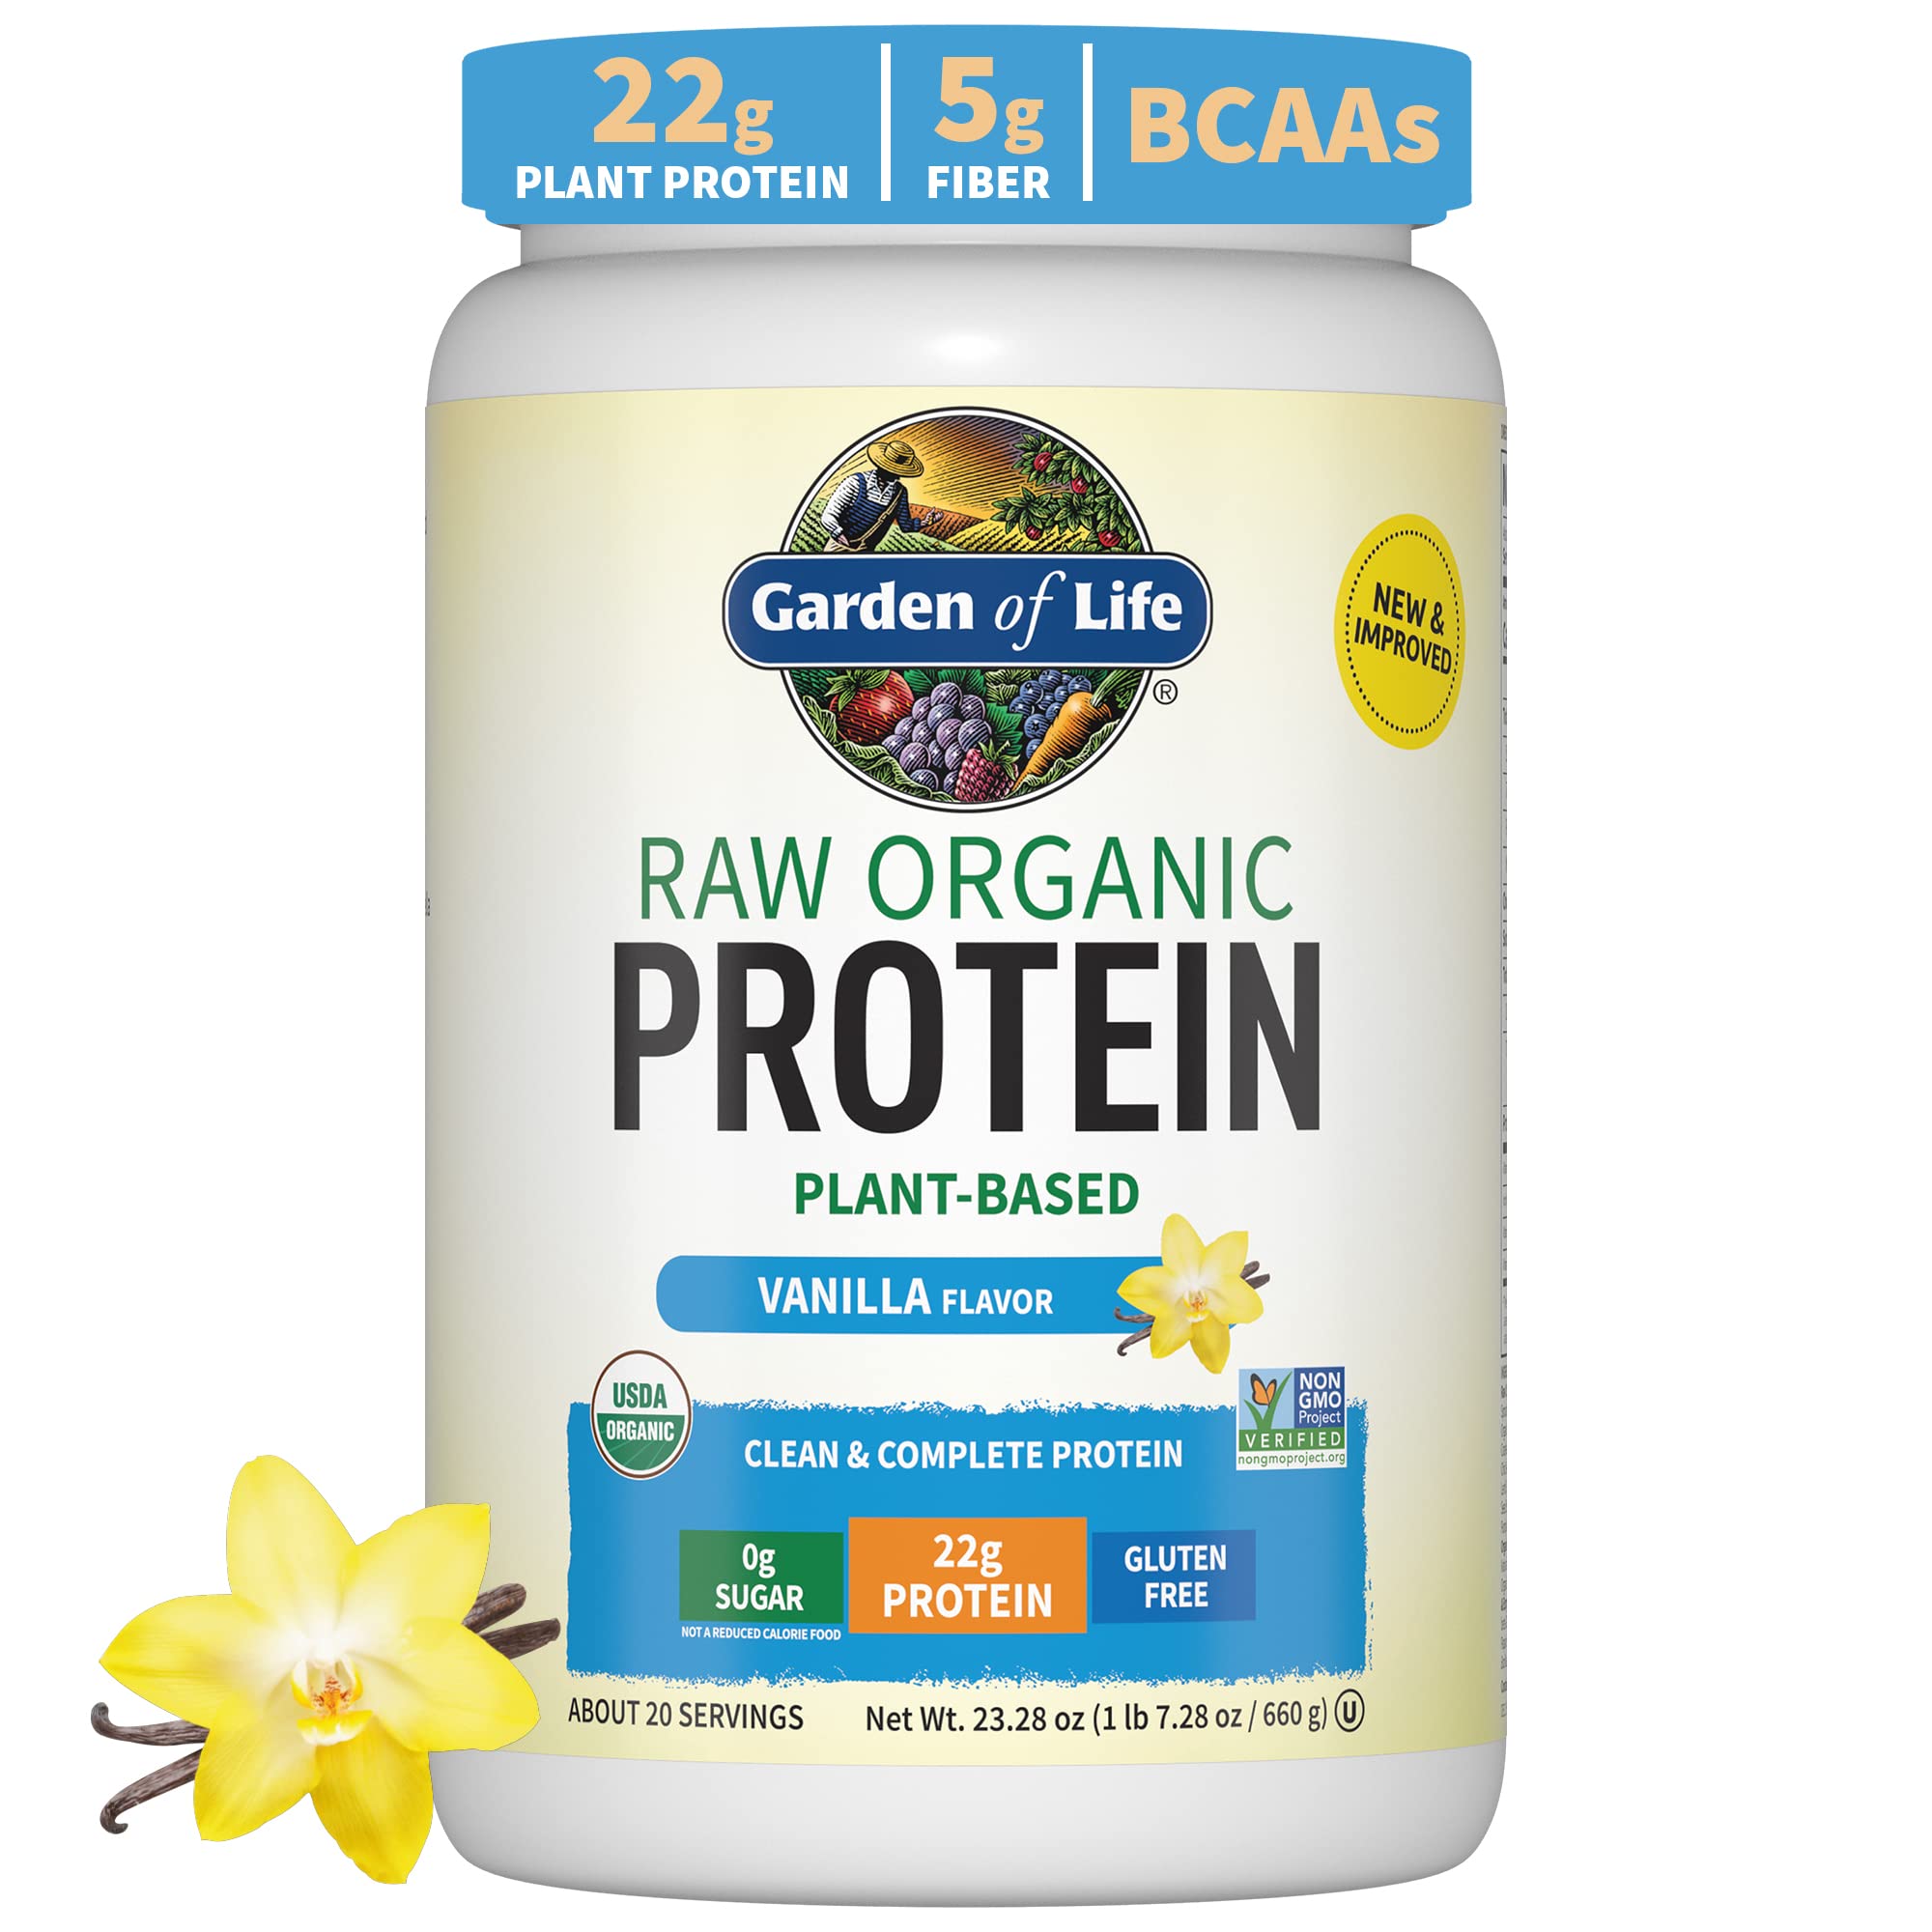 "Garden of Life Raw Organic Protein Vanilla"